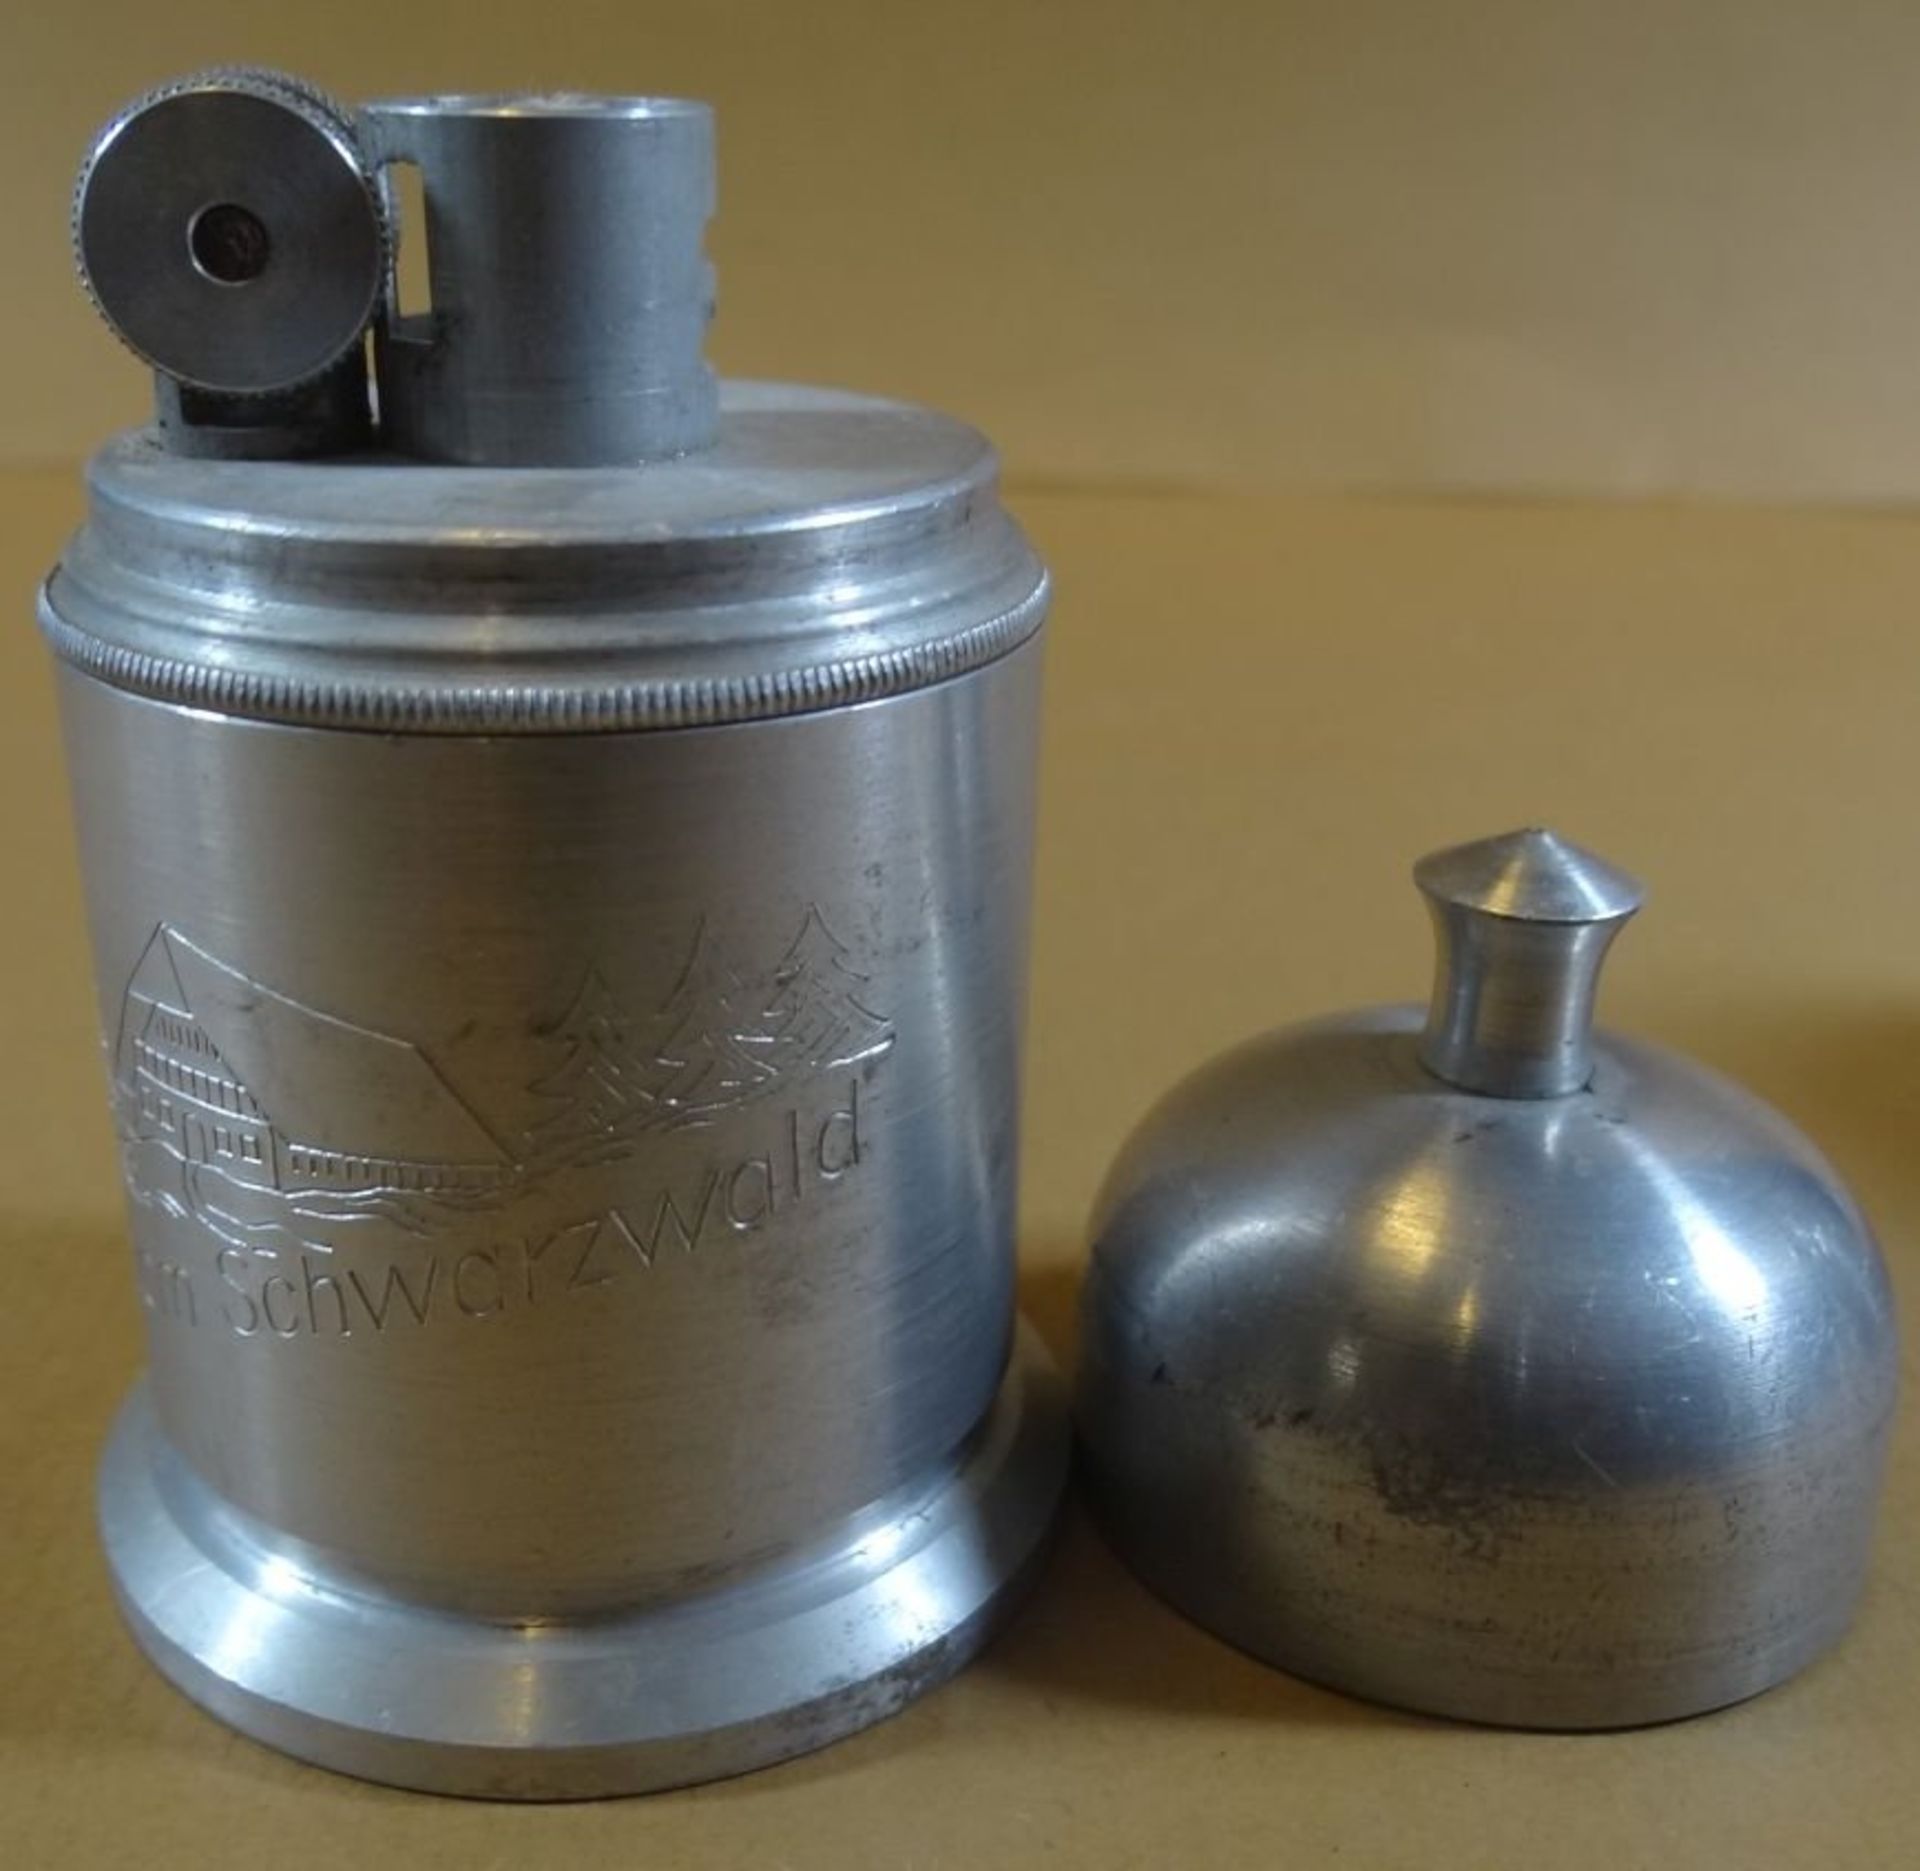 Tisch Benzin-Feuerzeug, Zinn, Gruss vom Schwarzwald, H-9 cm, ungebraucht - Image 2 of 4